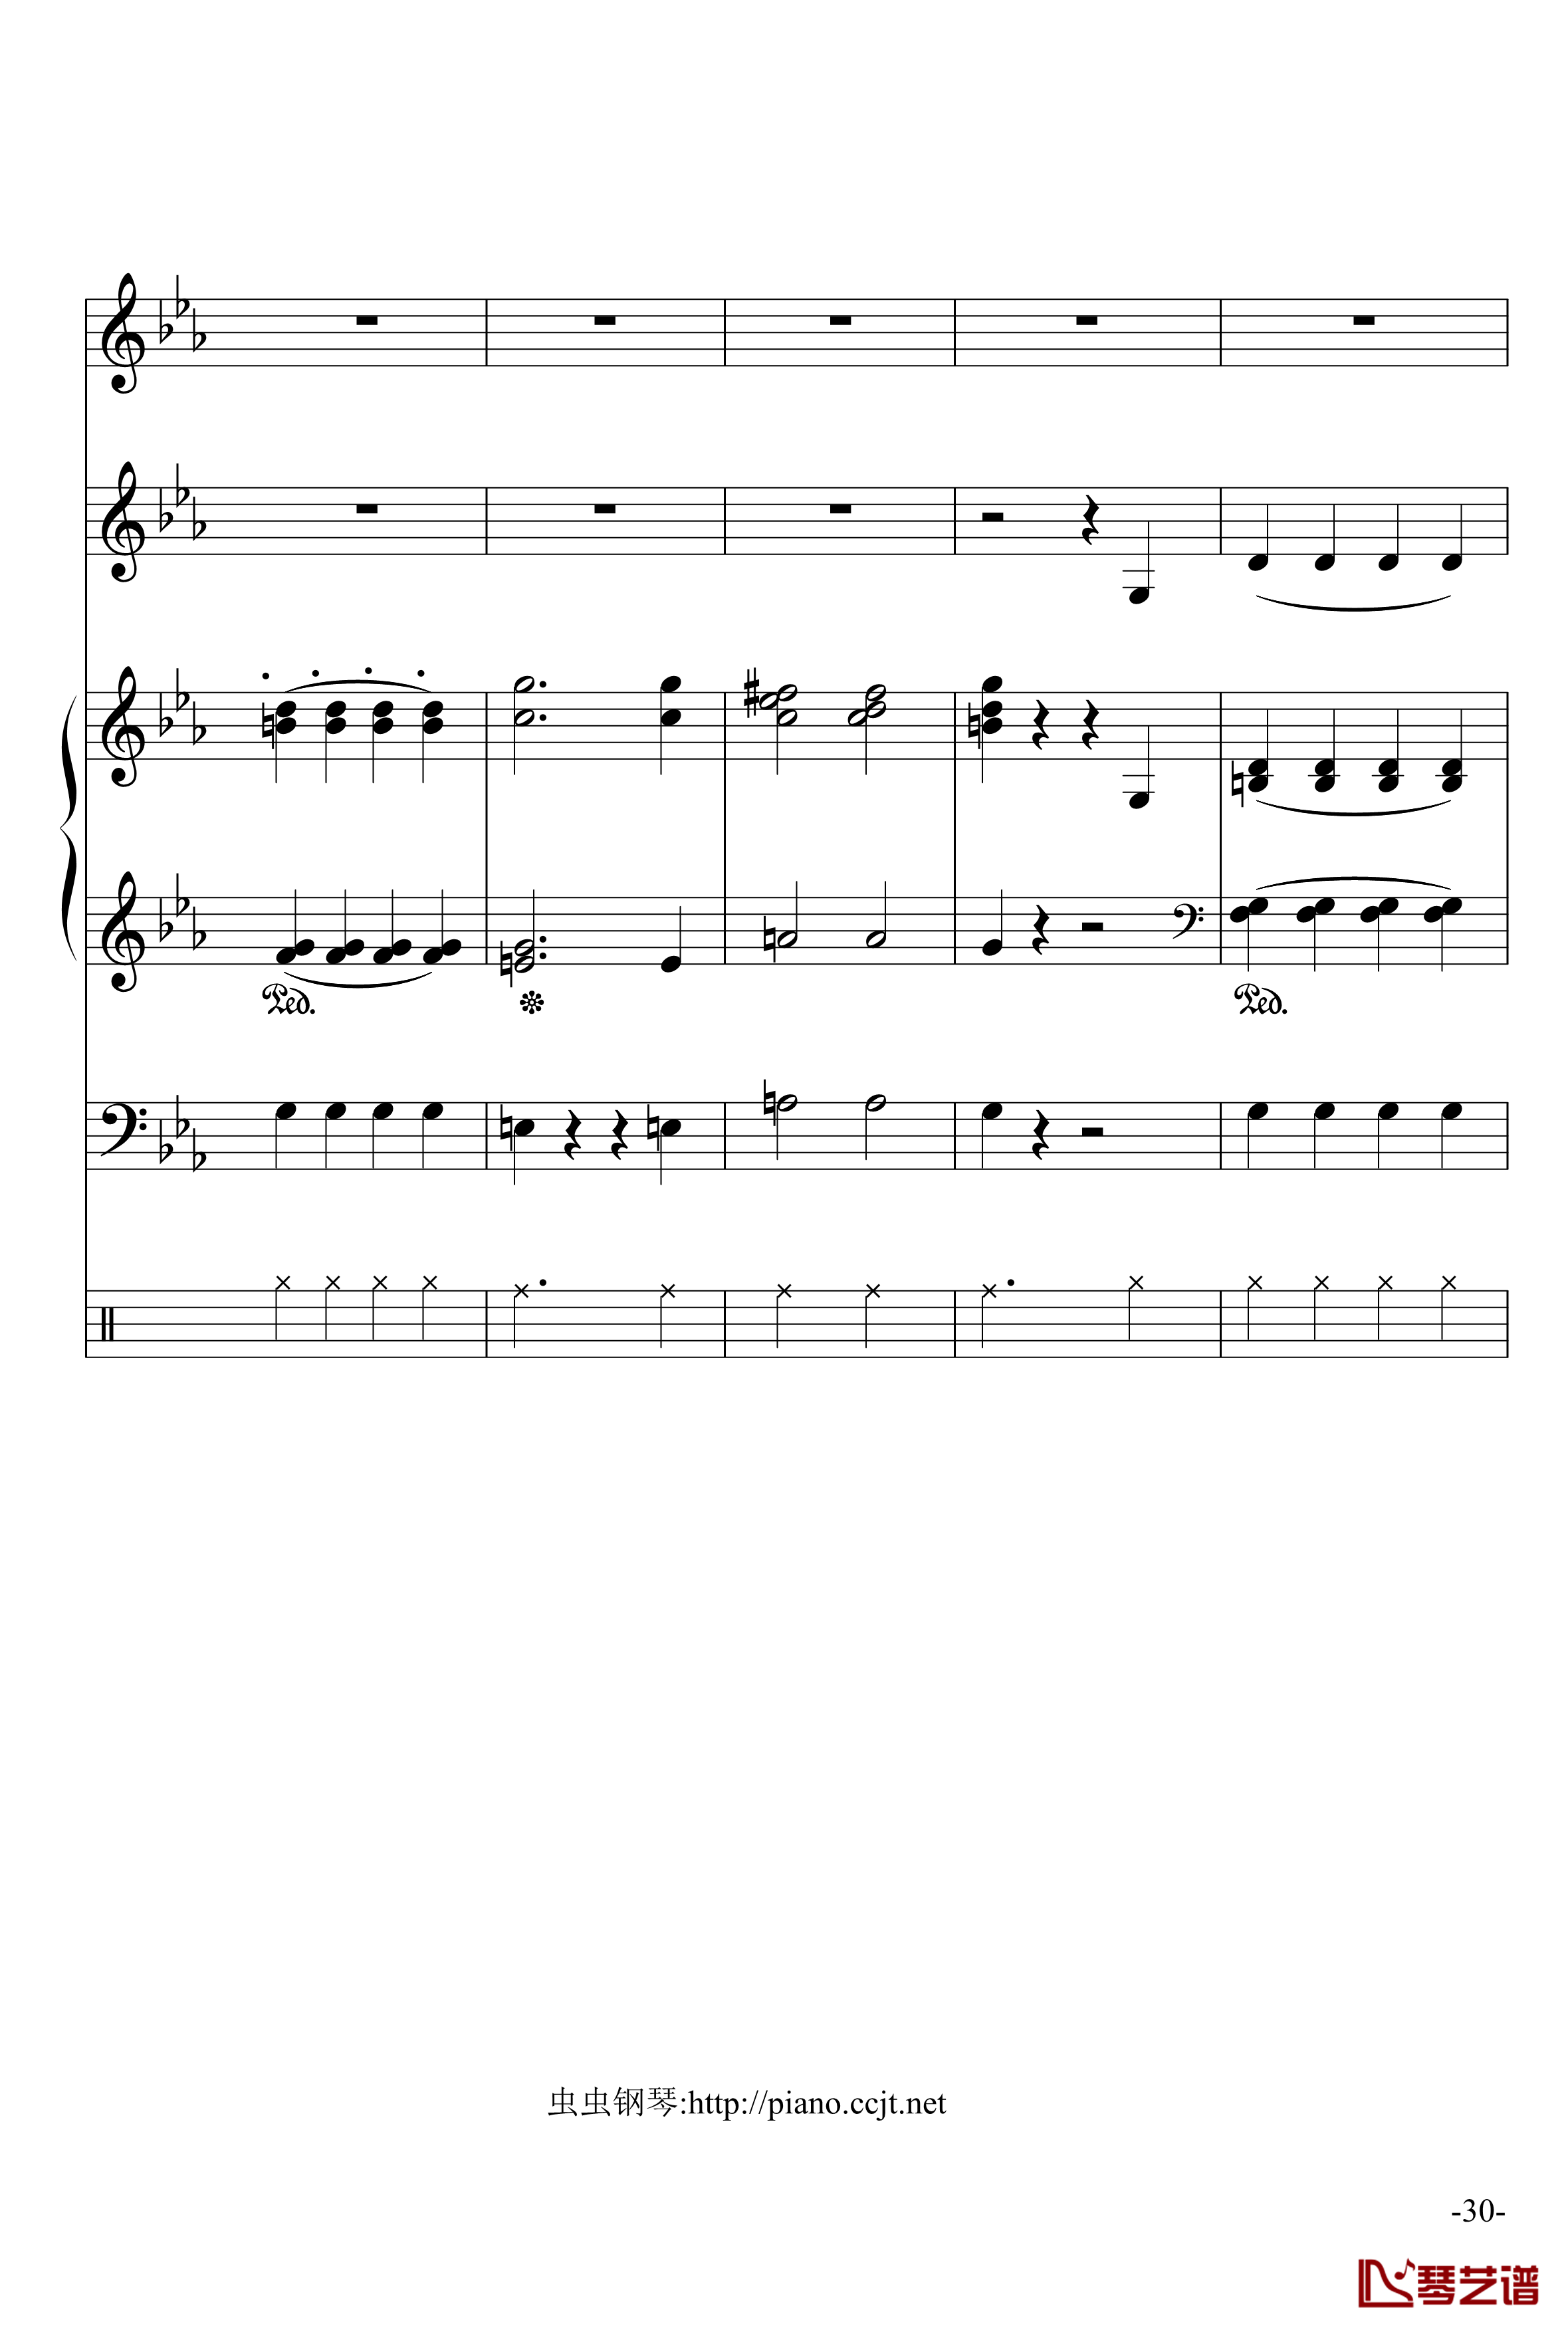 悲怆奏鸣曲钢琴谱-加小乐队-贝多芬-beethoven30